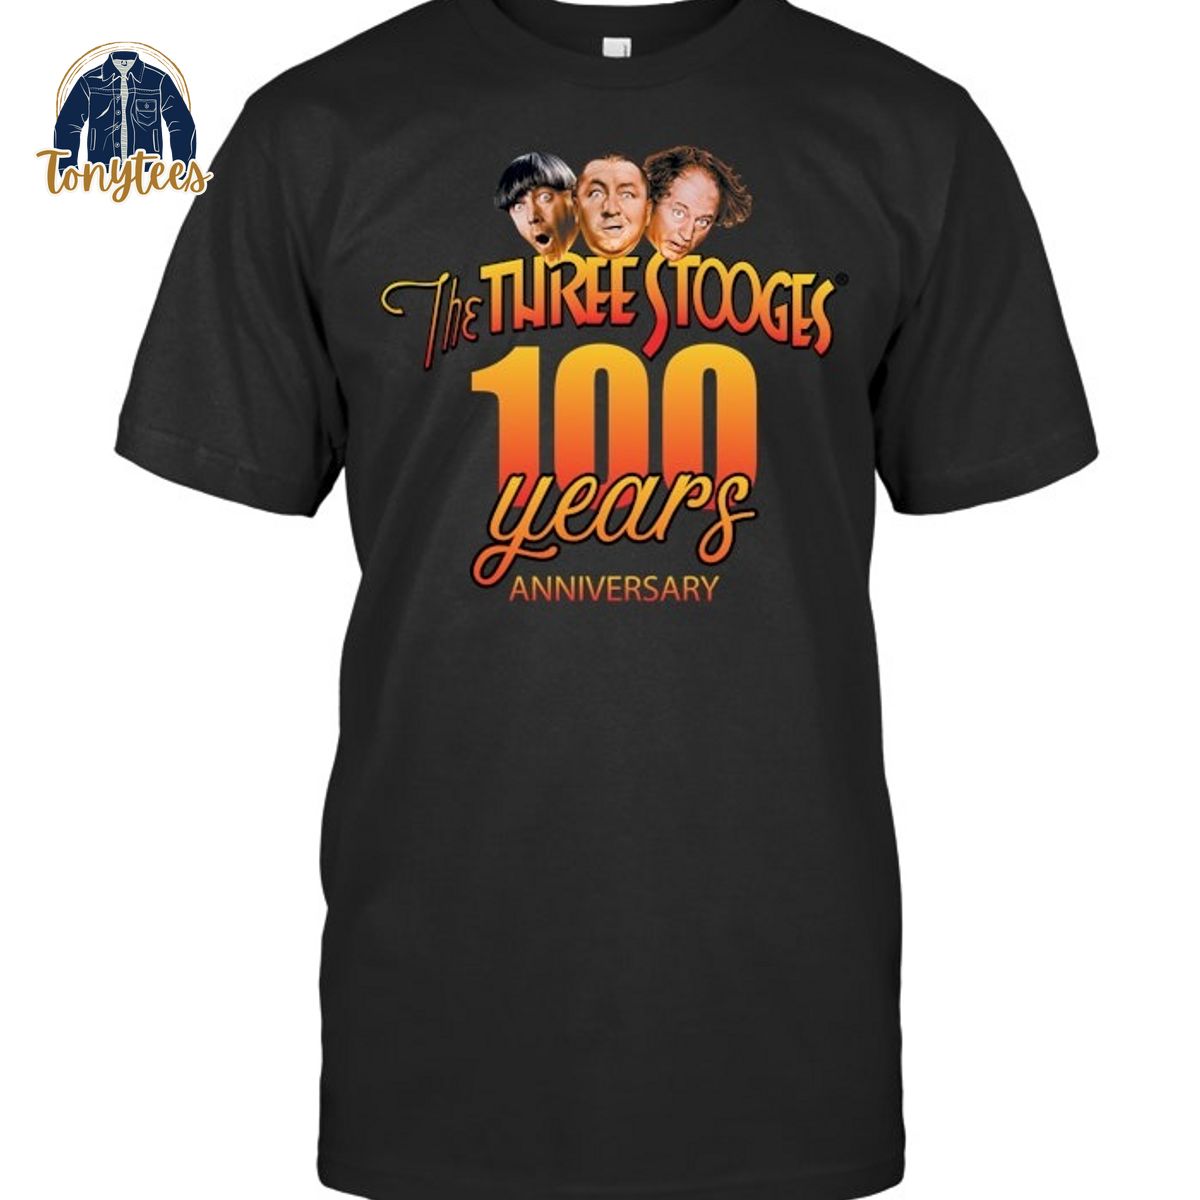 The three stooges 100 years anniversary shirt